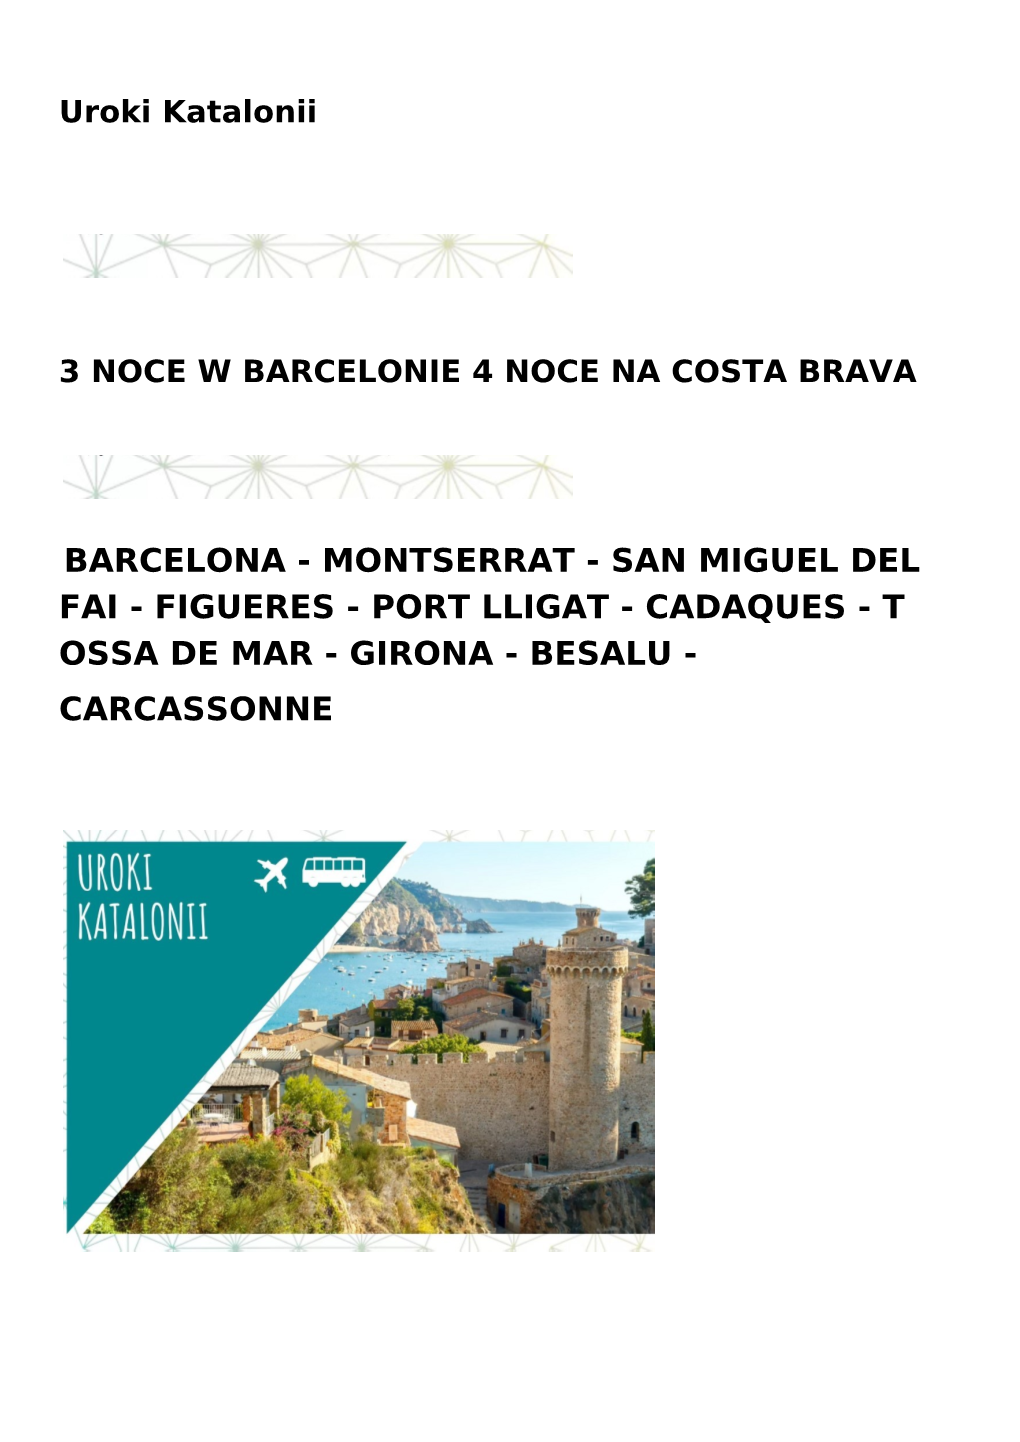 Barcelona - Montserrat - San Miguel Del Fai - Figueres - Port Lligat - Cadaques - T Ossa De Mar - Girona - Besalu - Carcassonne